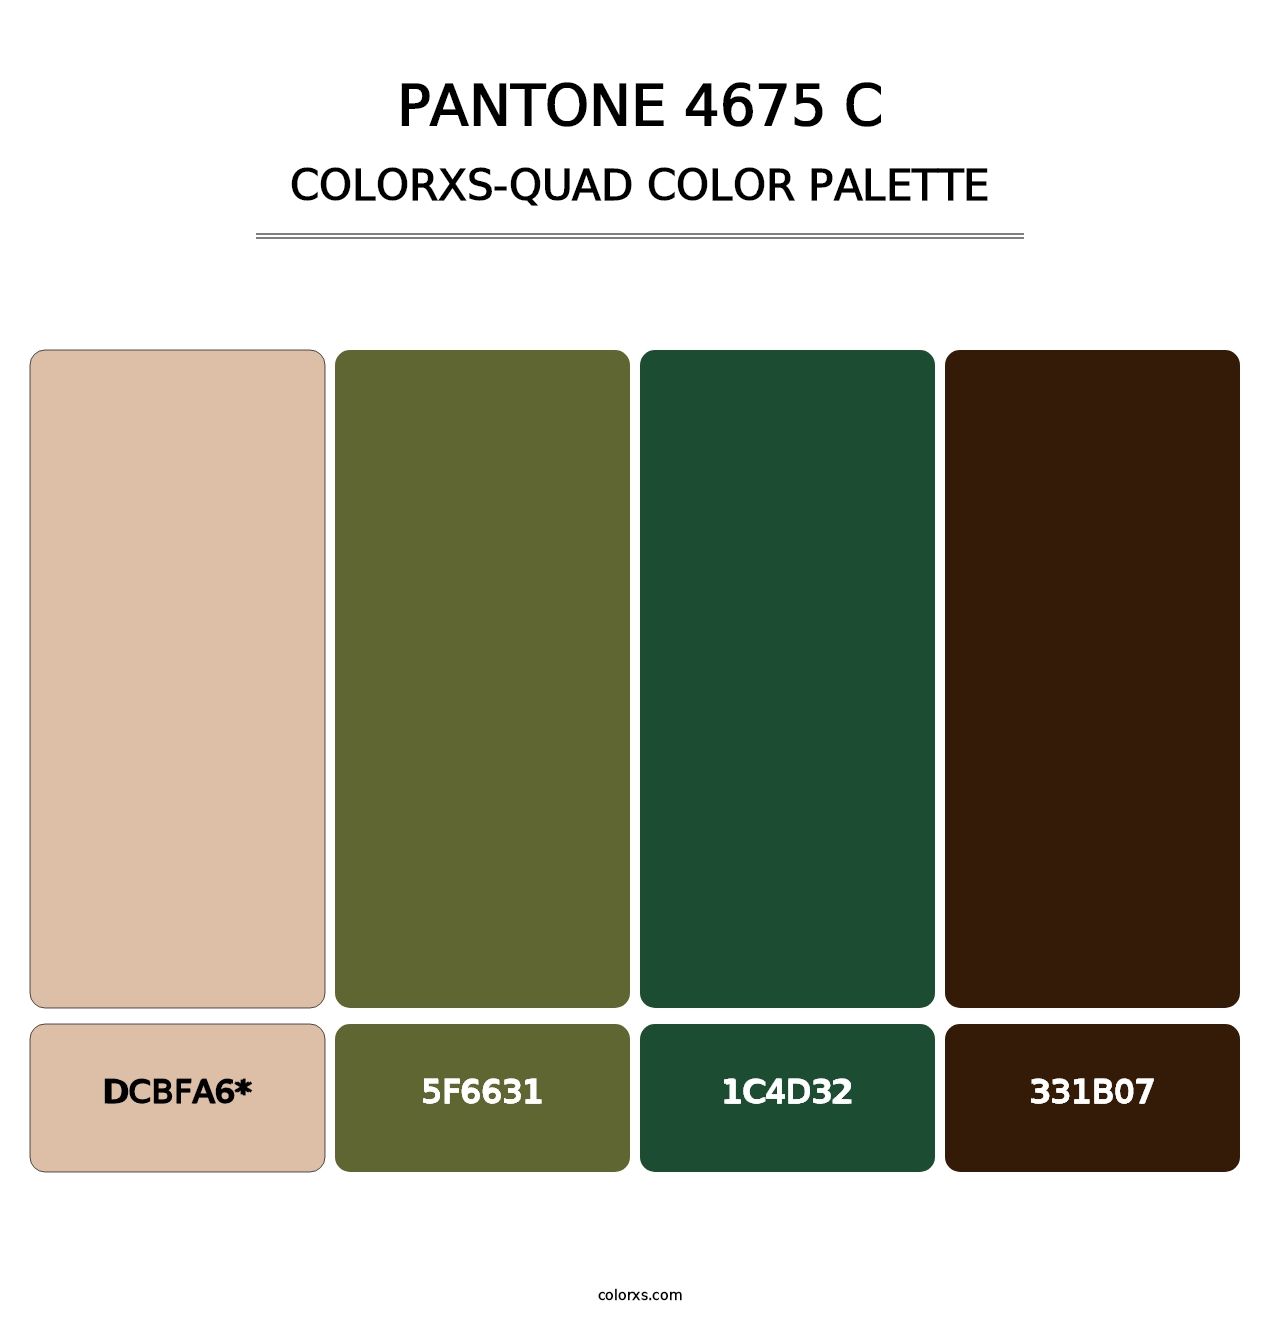 PANTONE 4675 C - Colorxs Quad Palette